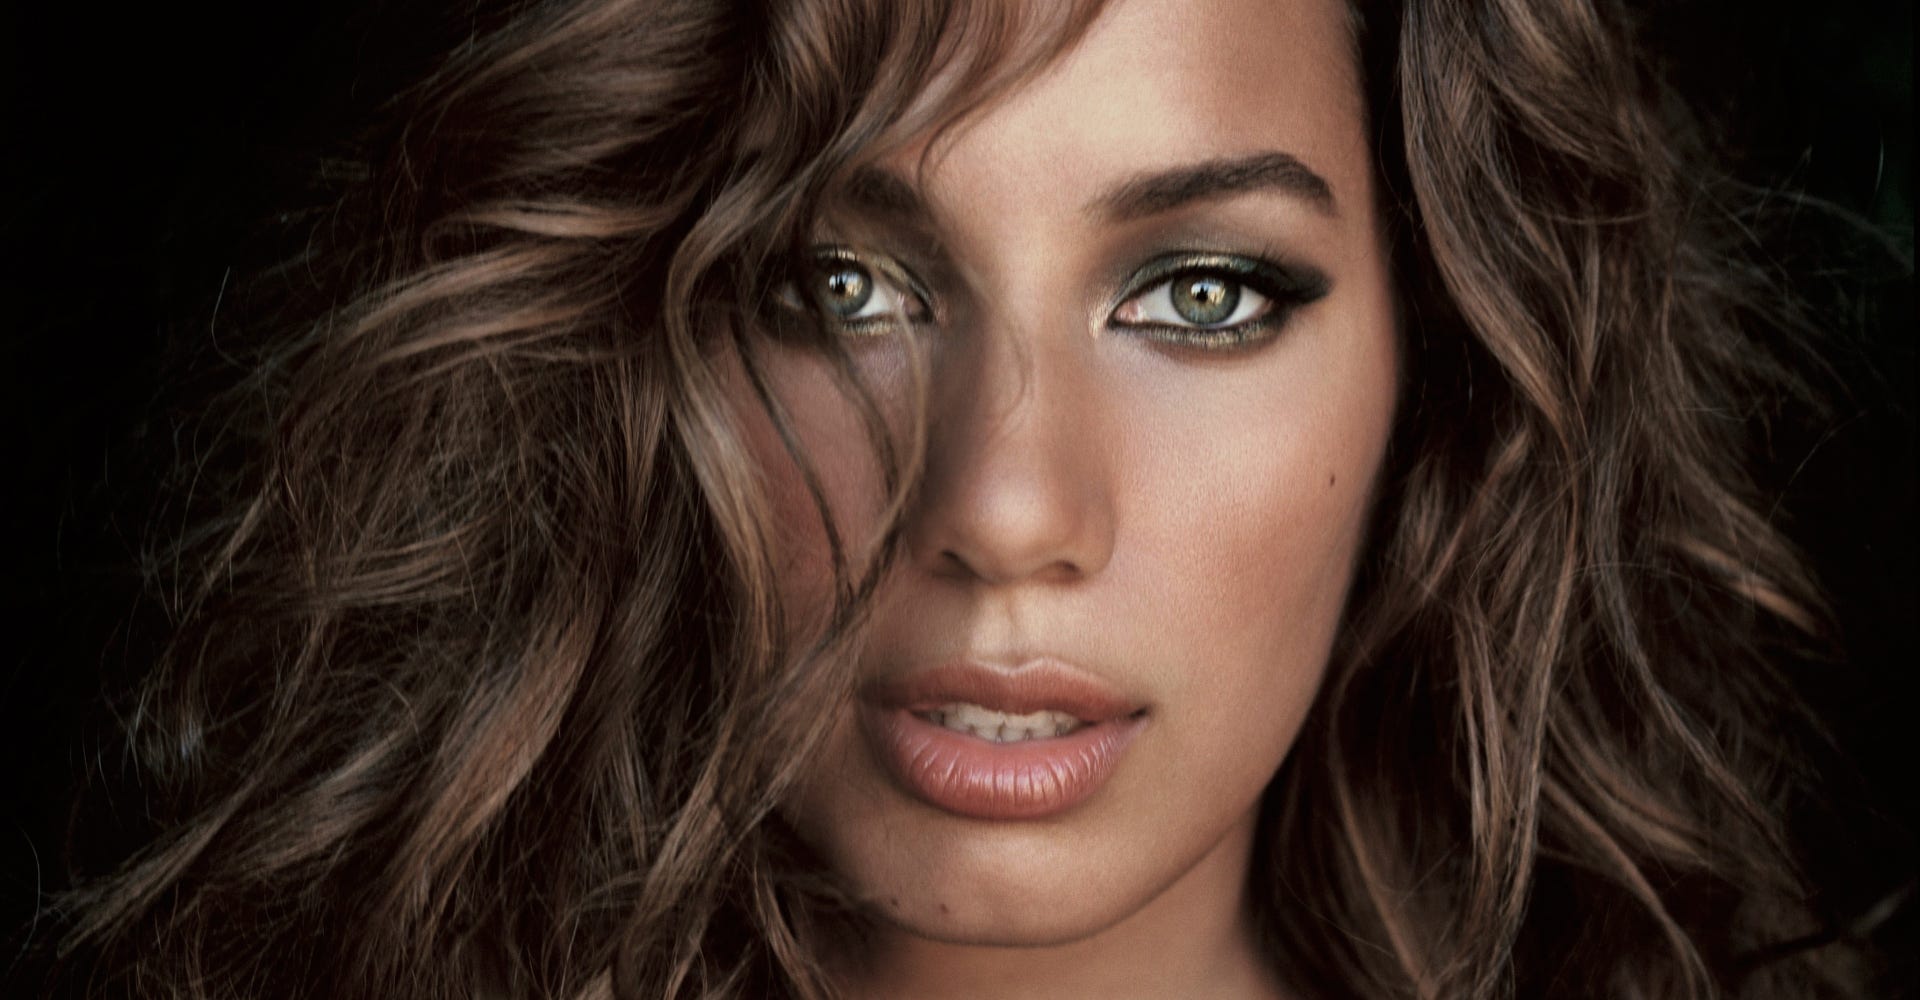 British bi-racial singer Leona Lewis